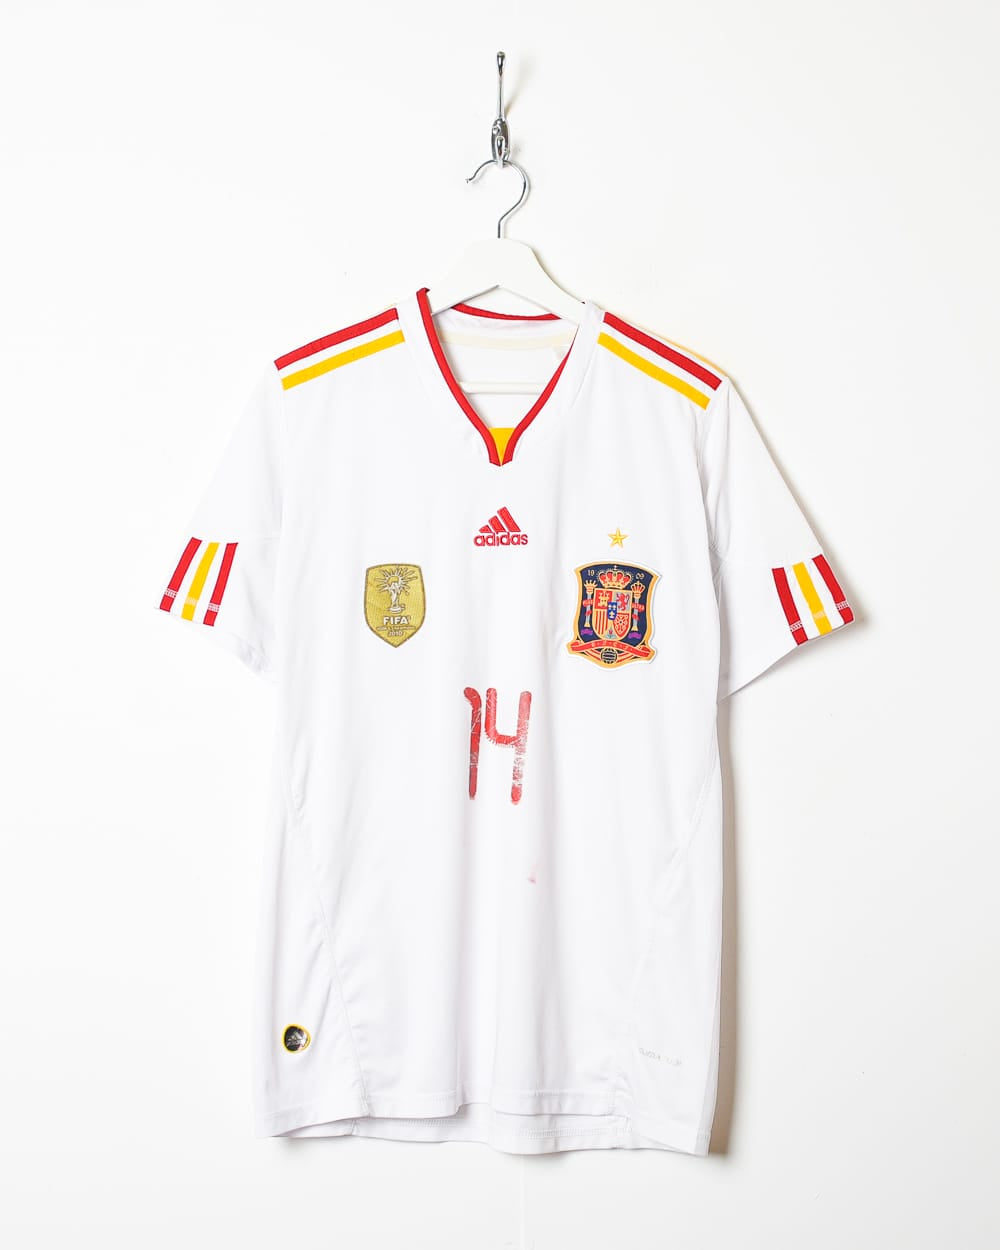 White Adidas Spain 2011 World Champions Away Shirt - Medium